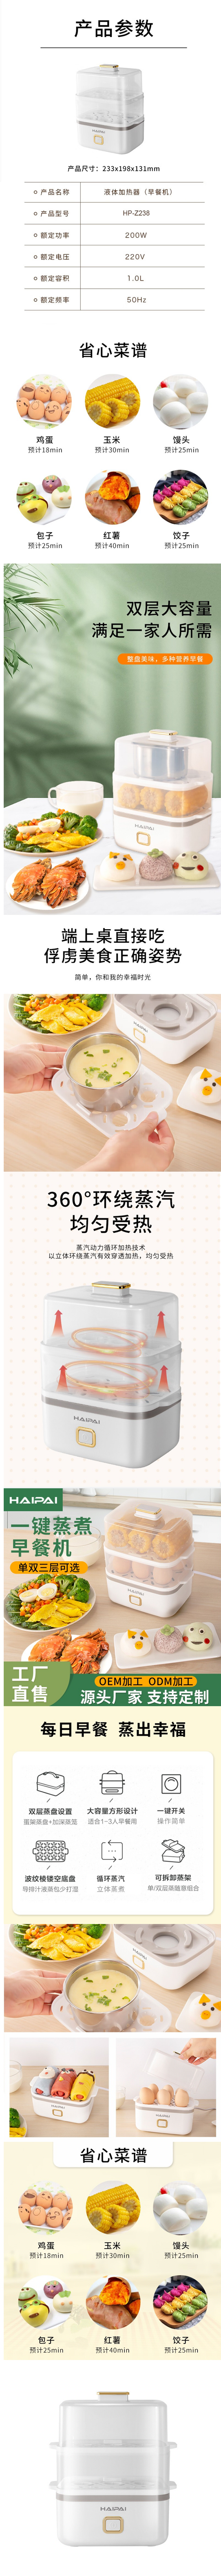 海牌 HP-Z238液体加热器（多功能早餐机）【图片 价格 品牌 报价】-京东.png